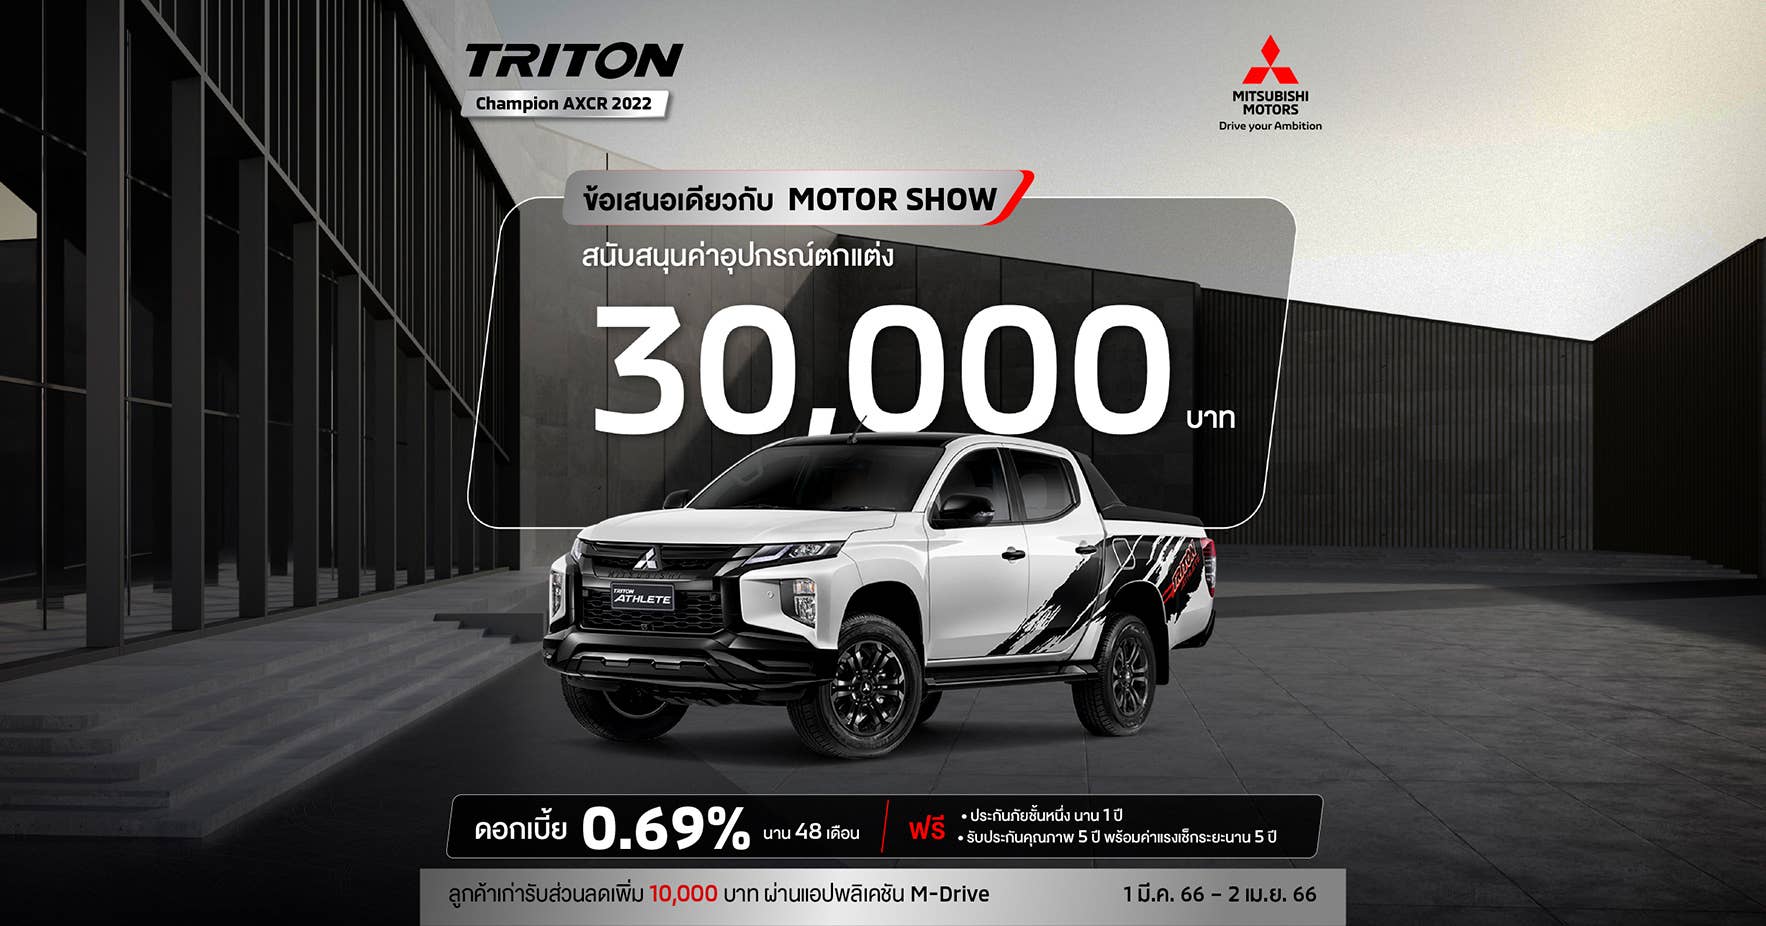 Triton สำหรับรุ่น ดับเบิ้ล แค็บ (4WD) รับ ดอกเบี้ย 0.69% นาน 48 เดือน พร้อมรับ สิทธิพิเศษสนับสนุนค่าใช้จ่ายในการติดตั้งอุปกรณ์เสริม 30,000 บาท